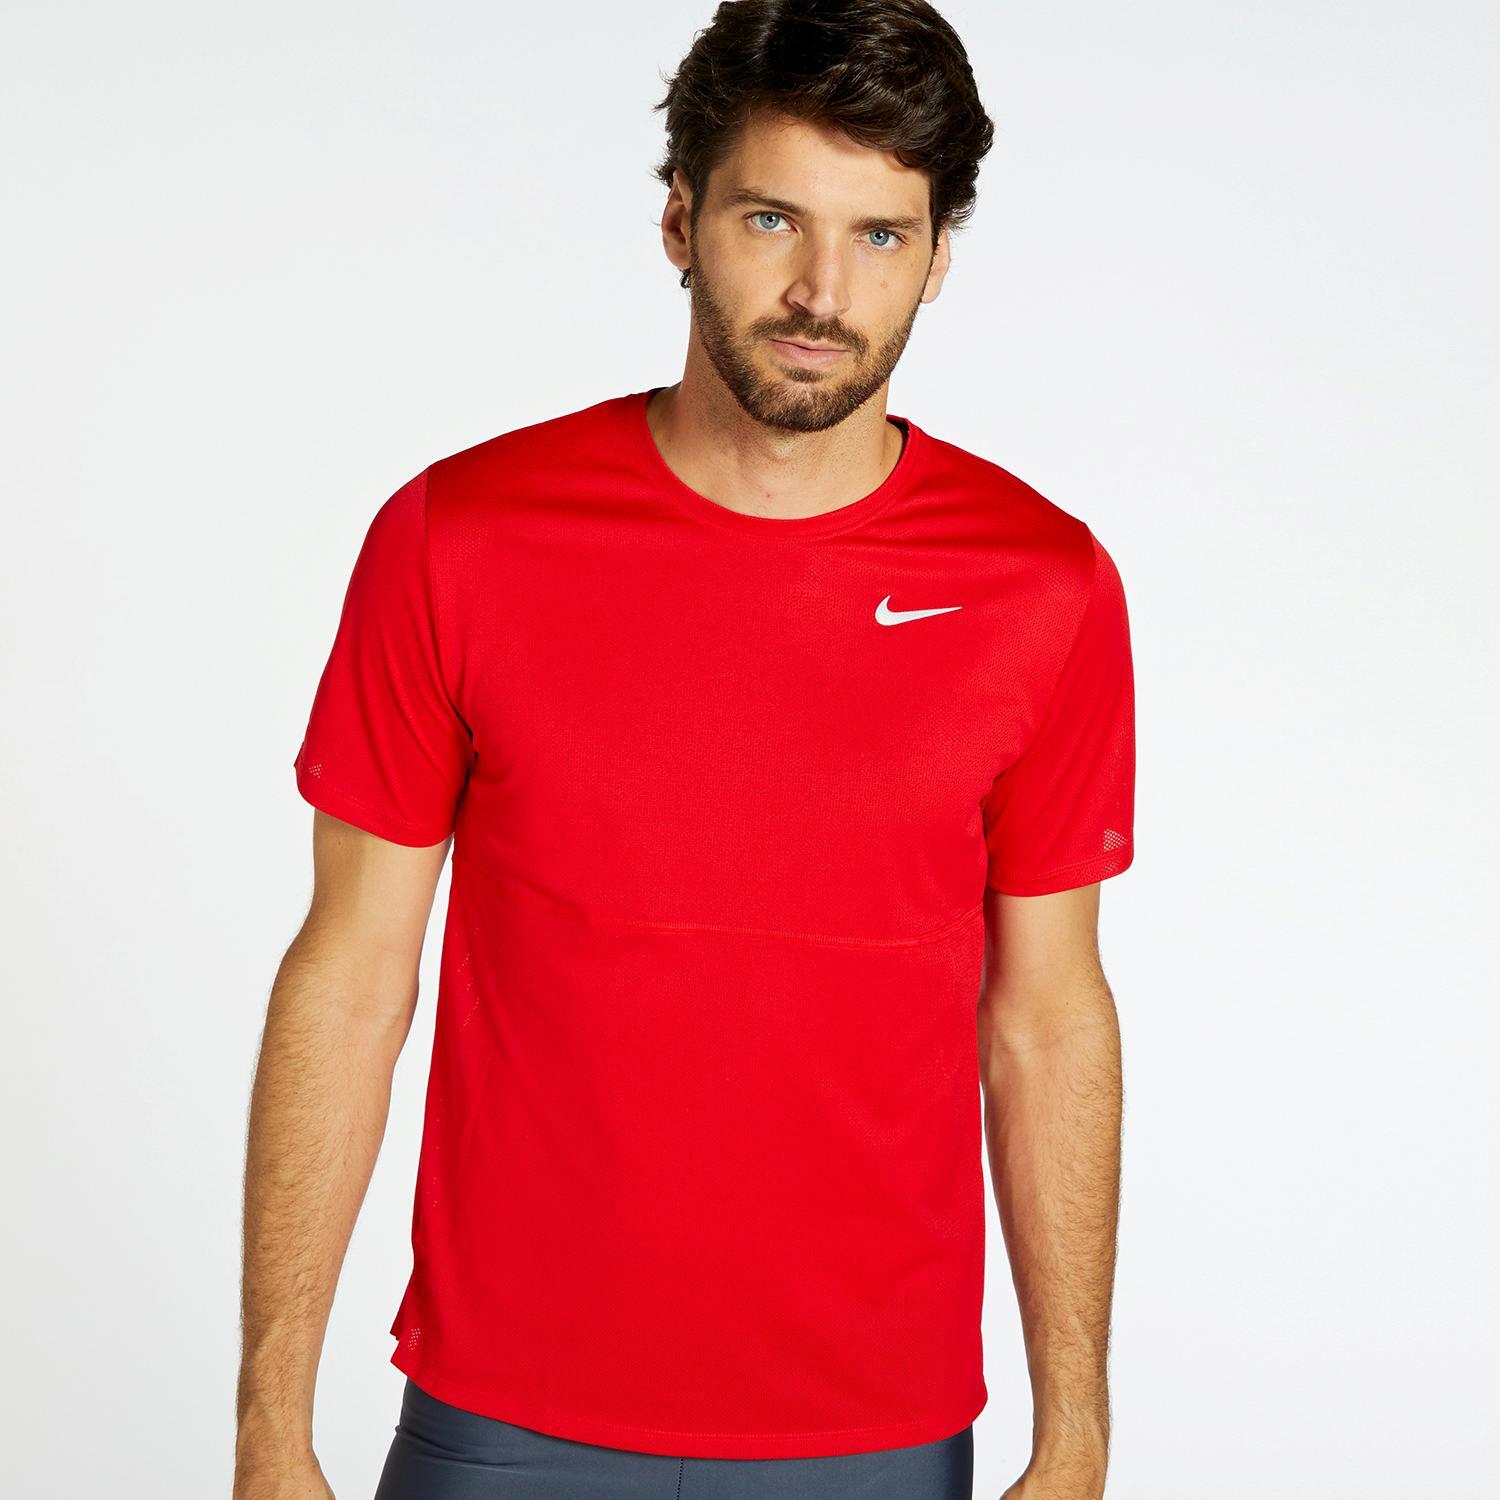 cien Sociable Anémona de mar Camiseta Running Nike - Rojo - Camiseta Hombre | Sprinter